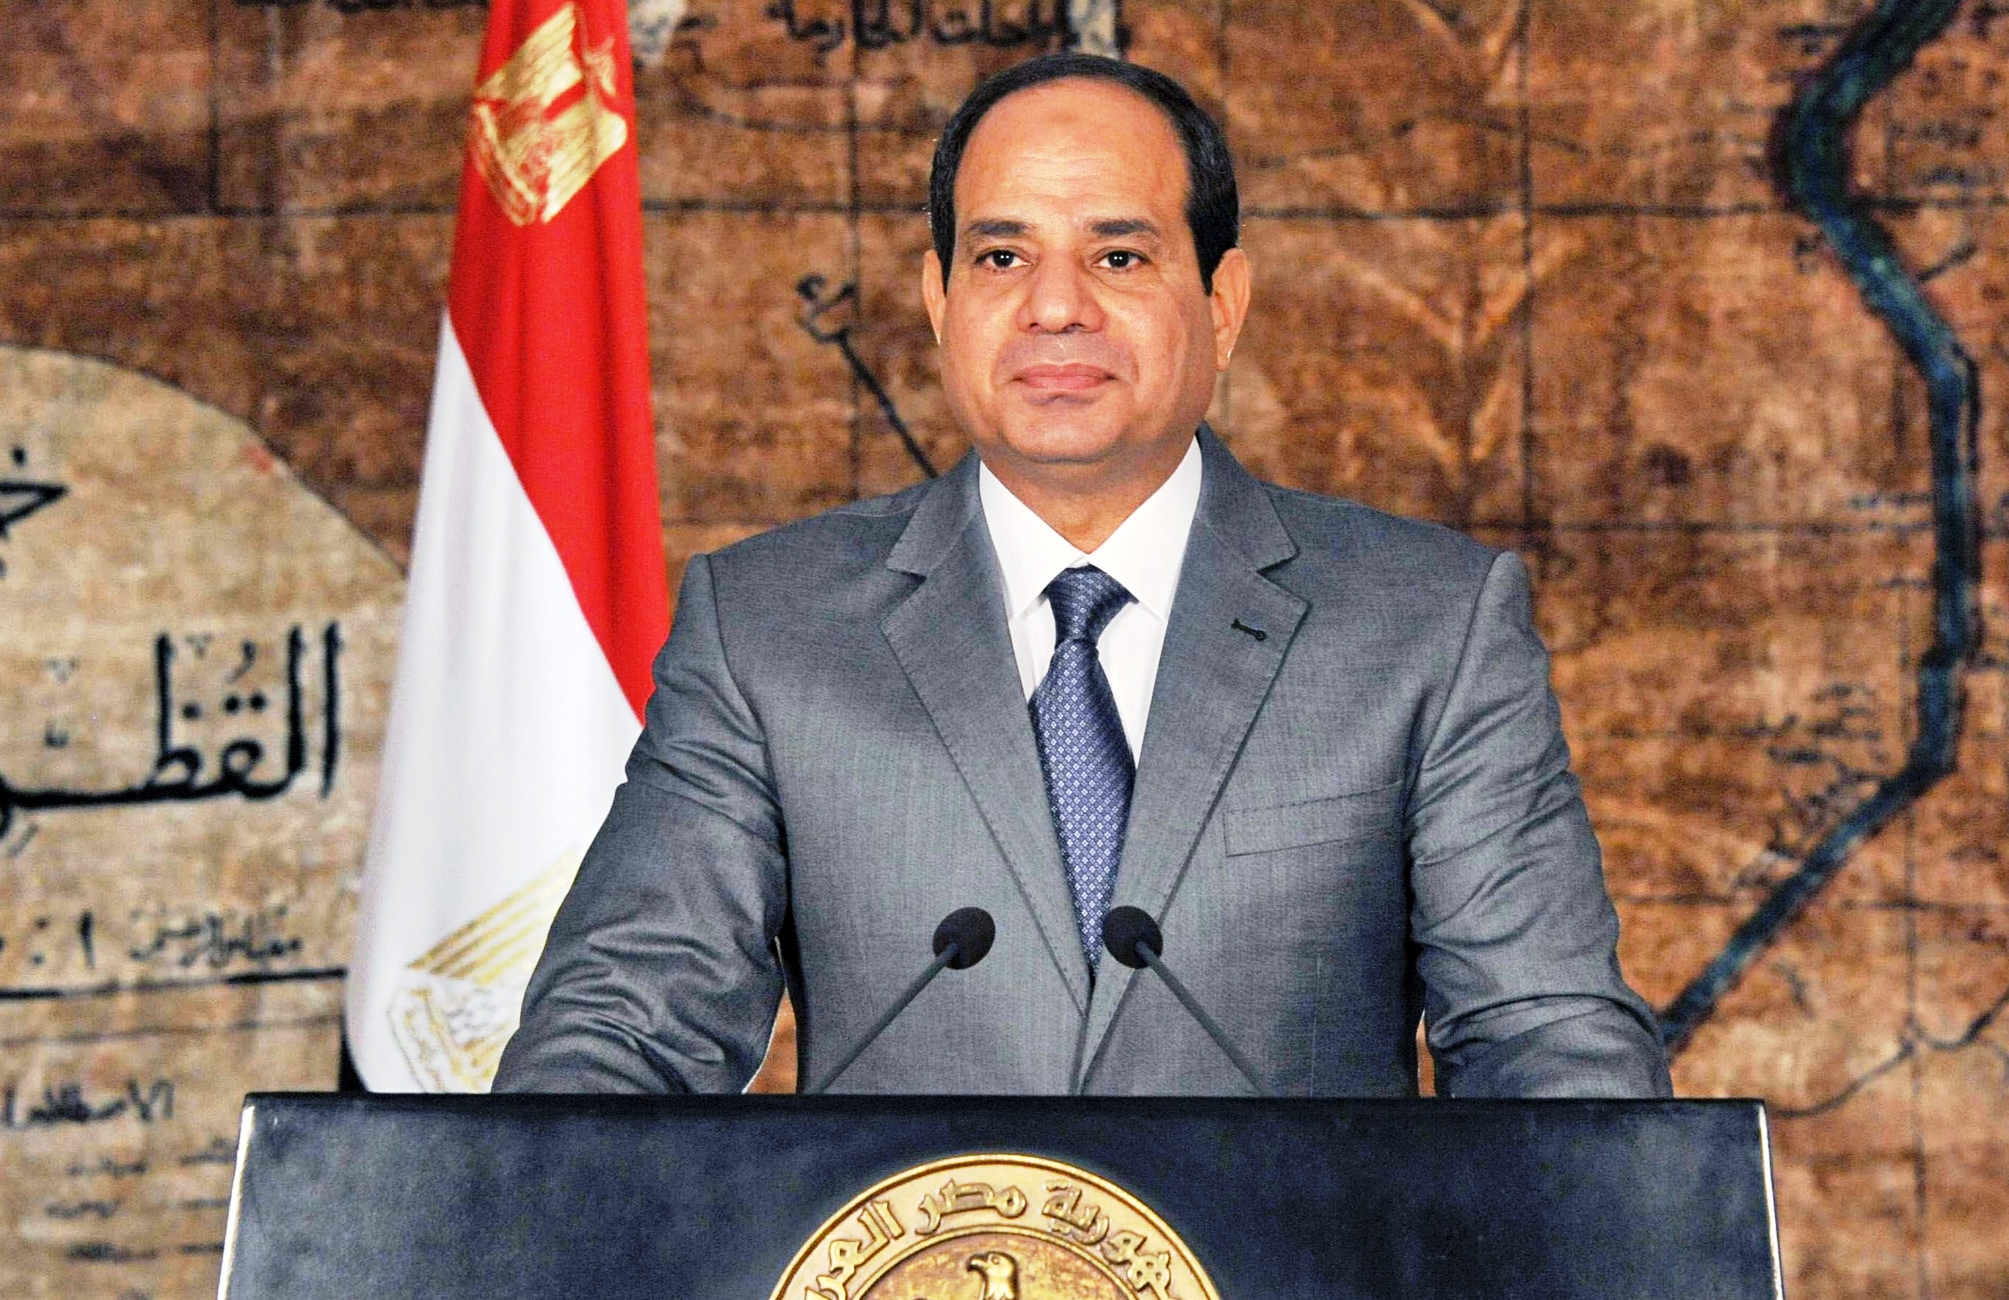 El presidente egipcio asegura que el atentado contra la iglesia fue obra de un suicida